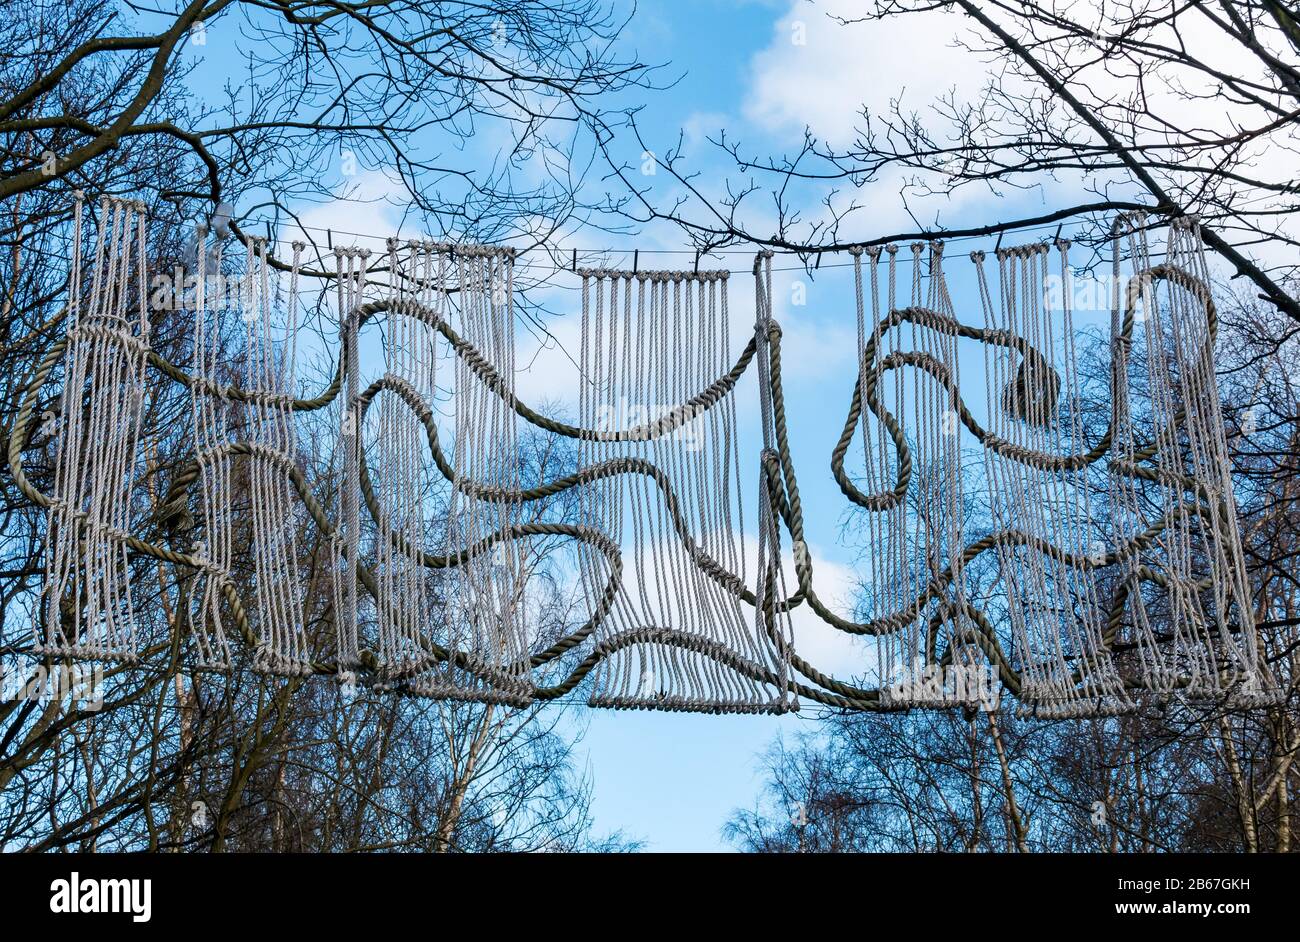 Cordes, cordes et cordes accrochées oeuvres d'art de sculpture par le sculpteur Lucy Wayman, une partie du Edinburgh Art Festival 2019 au-dessus de la piste cyclable, Édimbourg, Écosse, Royaume-Uni Banque D'Images